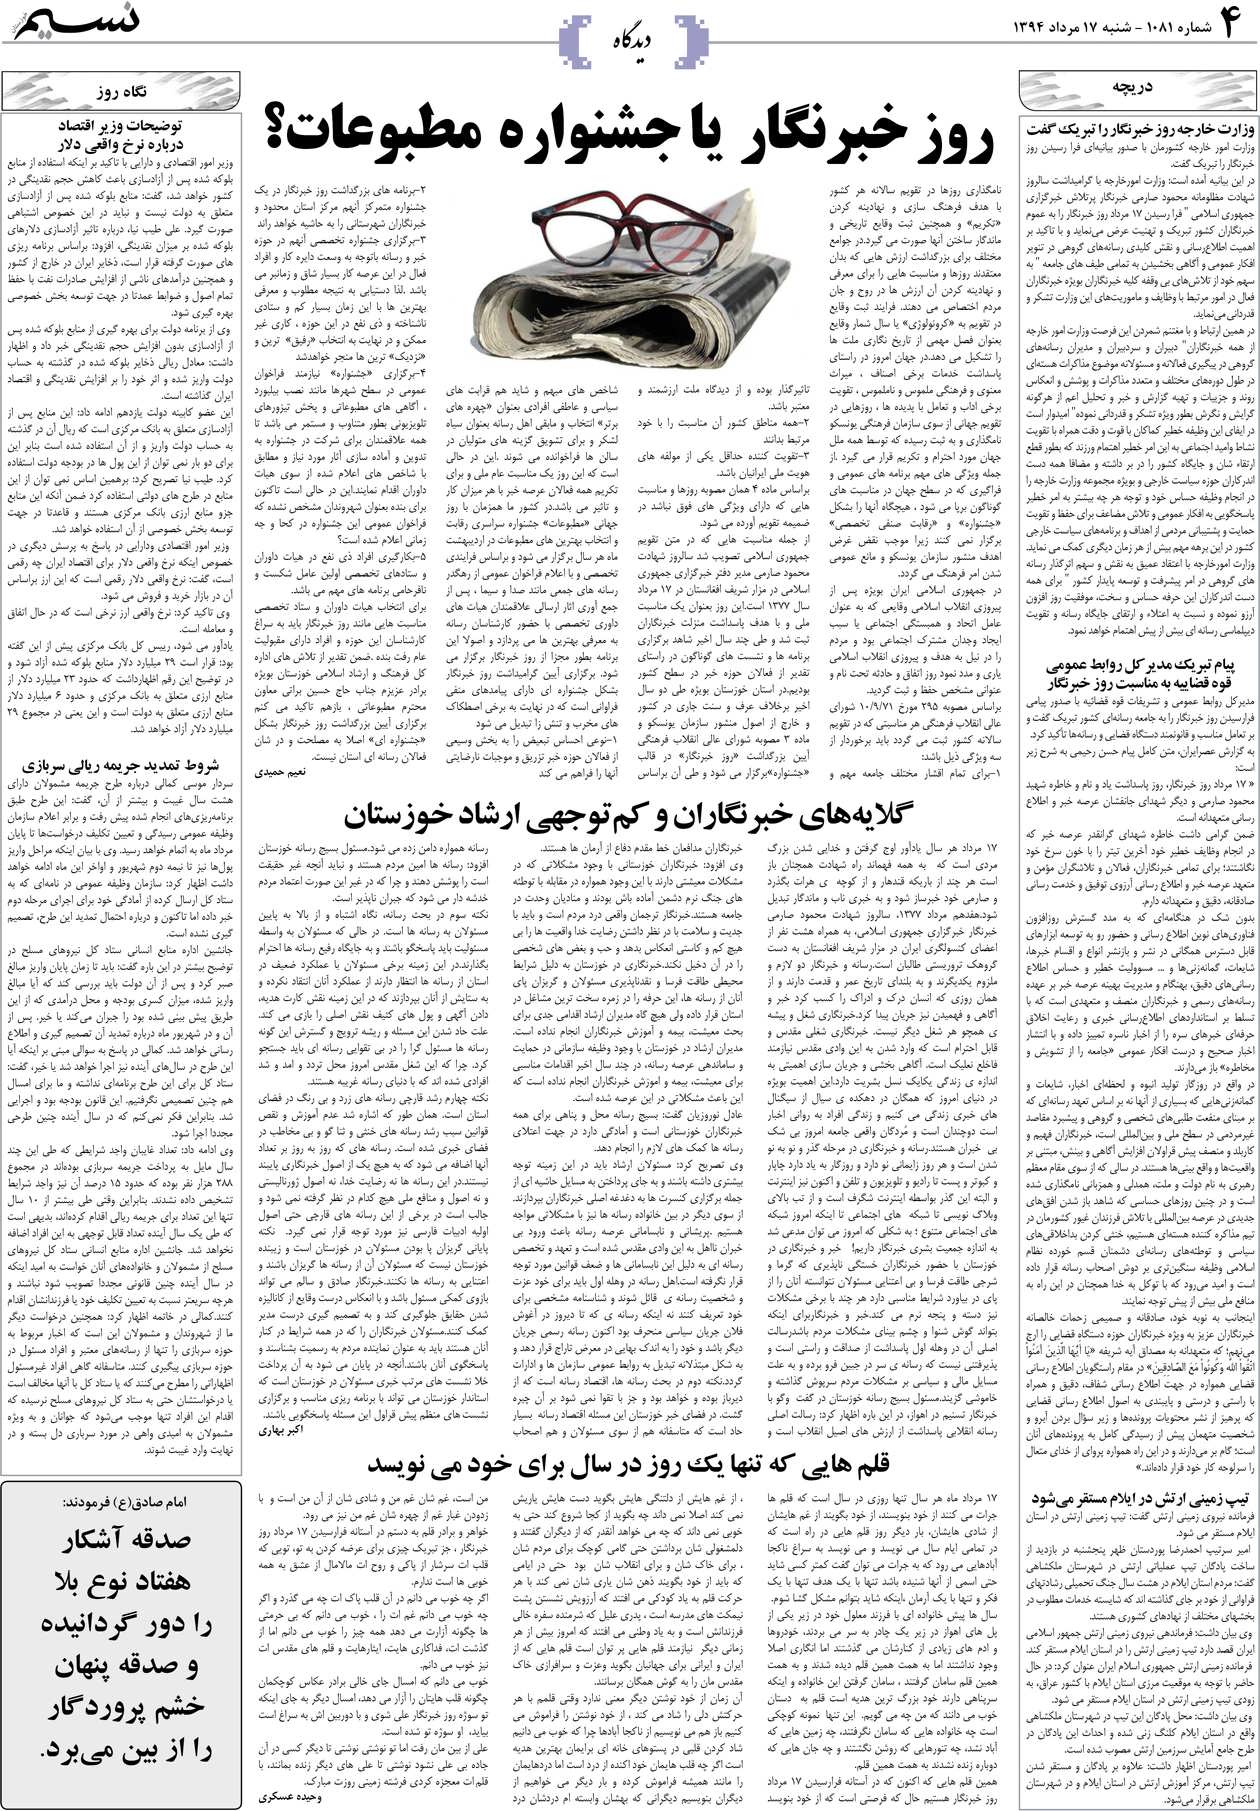 صفحه دیدگاه روزنامه نسیم شماره 1081